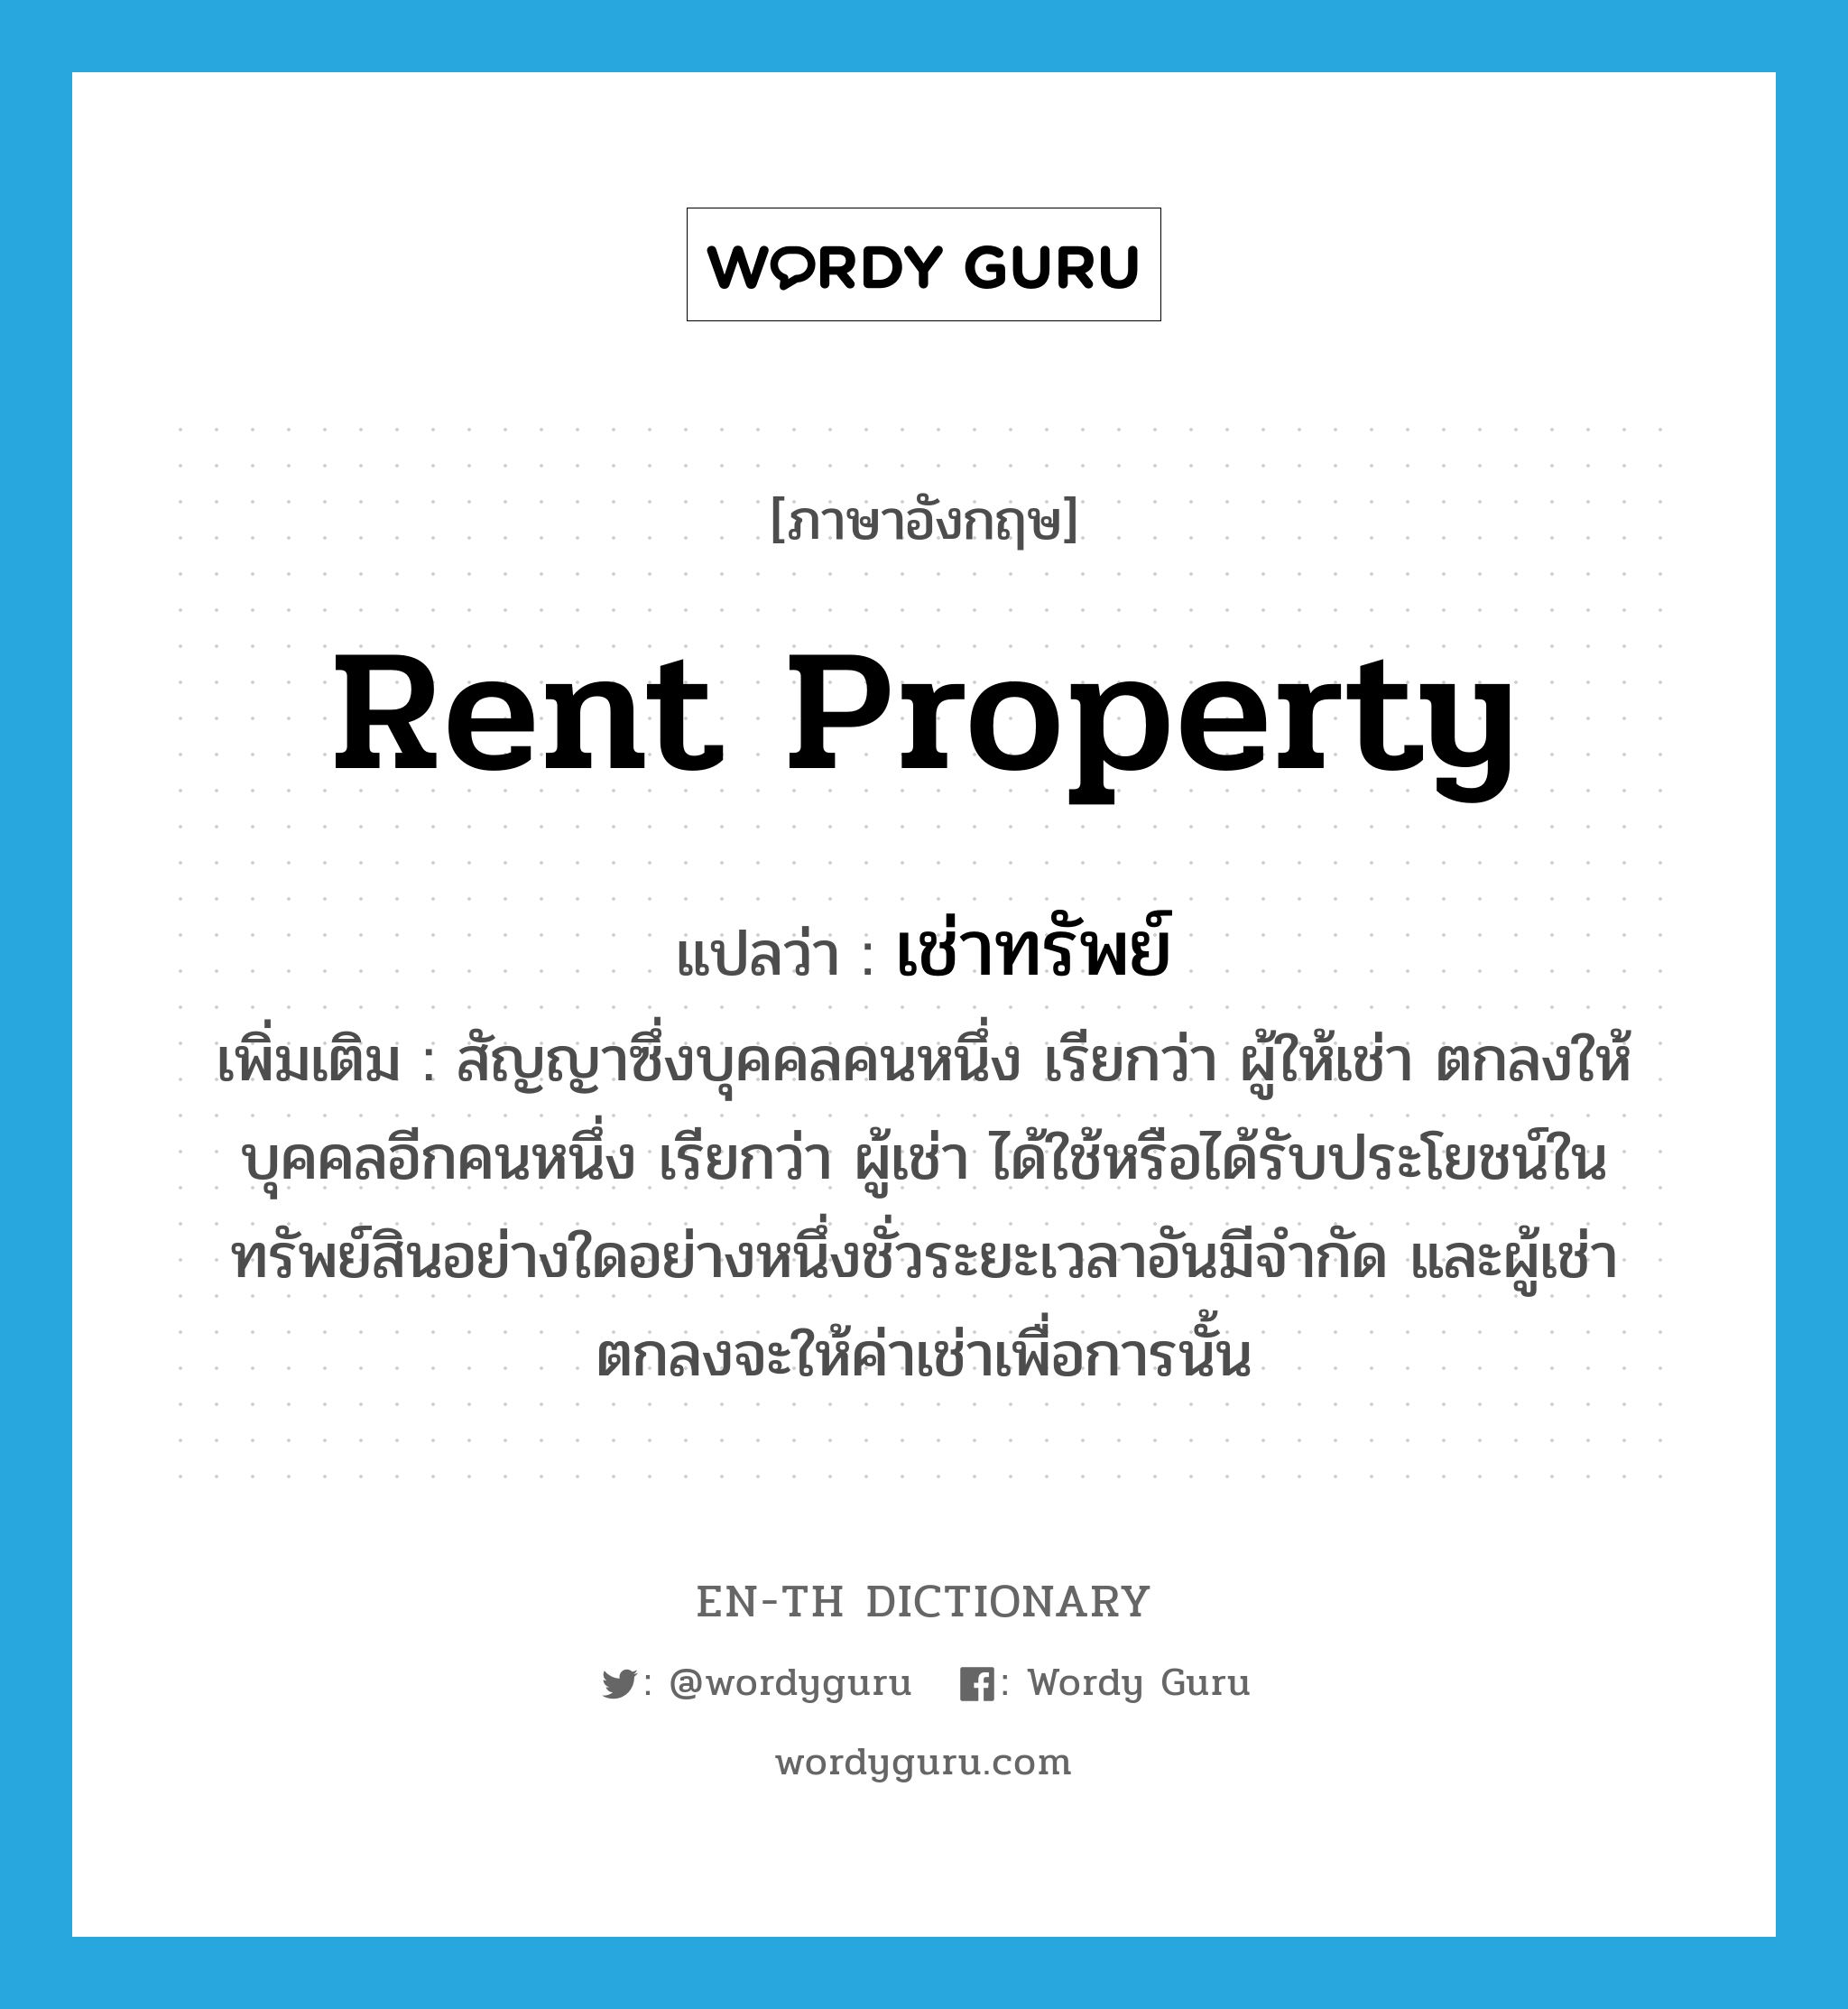 rent property แปลว่า?, คำศัพท์ภาษาอังกฤษ rent property แปลว่า เช่าทรัพย์ ประเภท V เพิ่มเติม สัญญาซึ่งบุคคลคนหนึ่ง เรียกว่า ผู้ให้เช่า ตกลงให้บุคคลอีกคนหนึ่ง เรียกว่า ผู้เช่า ได้ใช้หรือได้รับประโยชน์ในทรัพย์สินอย่างใดอย่างหนึ่งชั่วระยะเวลาอันมีจำกัด และผู้เช่าตกลงจะให้ค่าเช่าเพื่อการนั้น หมวด V